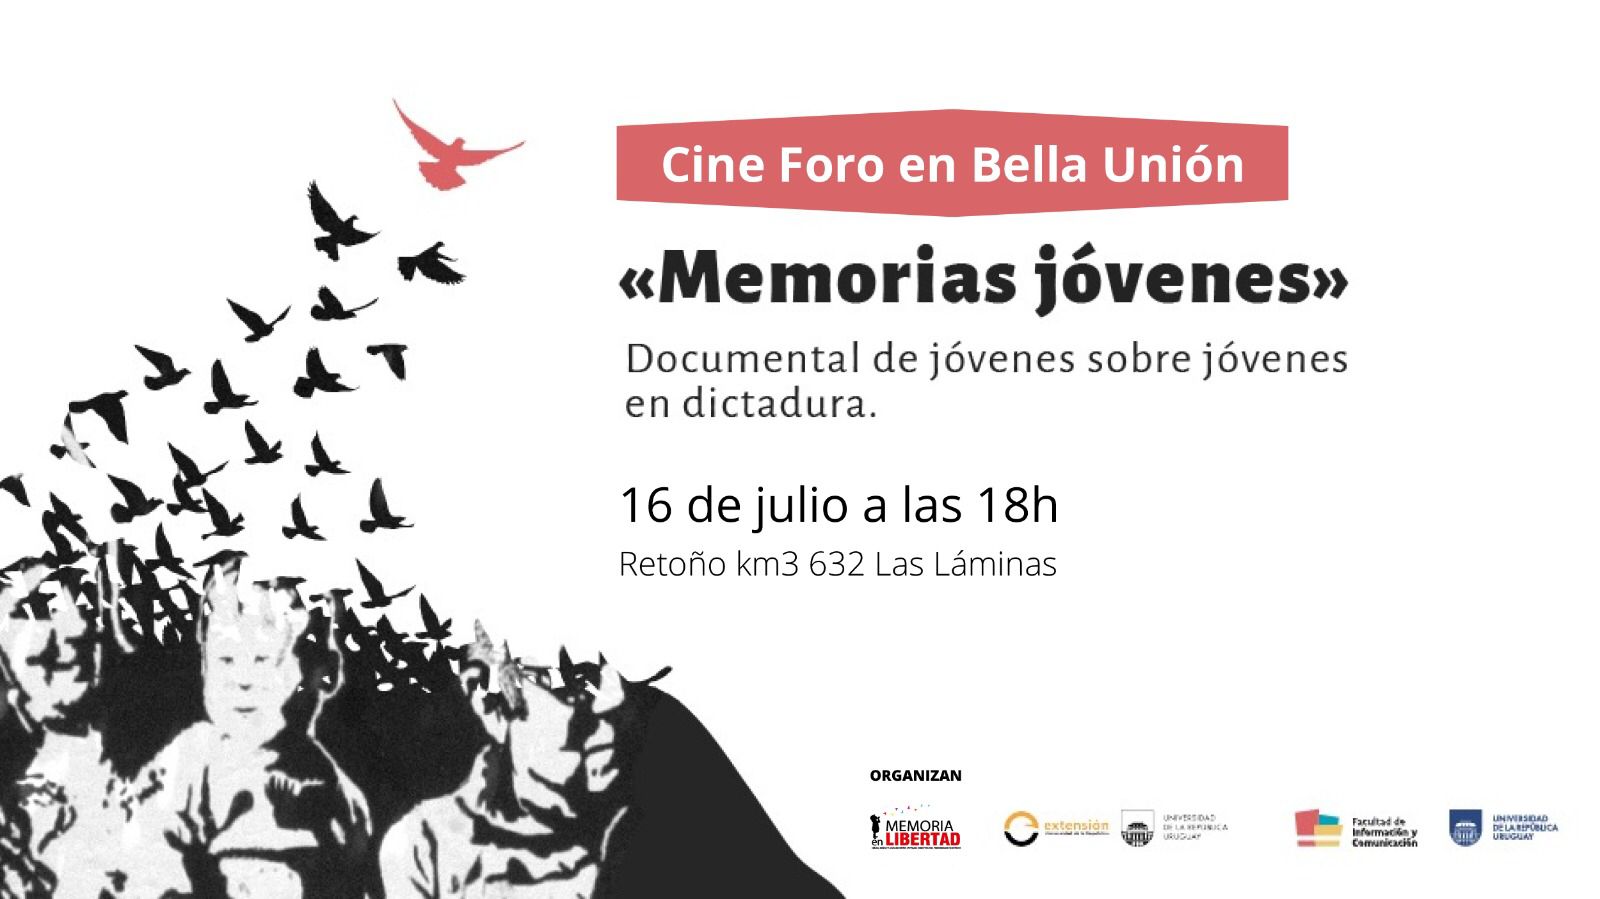 Invitación al cine foro de “Memorias jóvenes” en Bella Unión